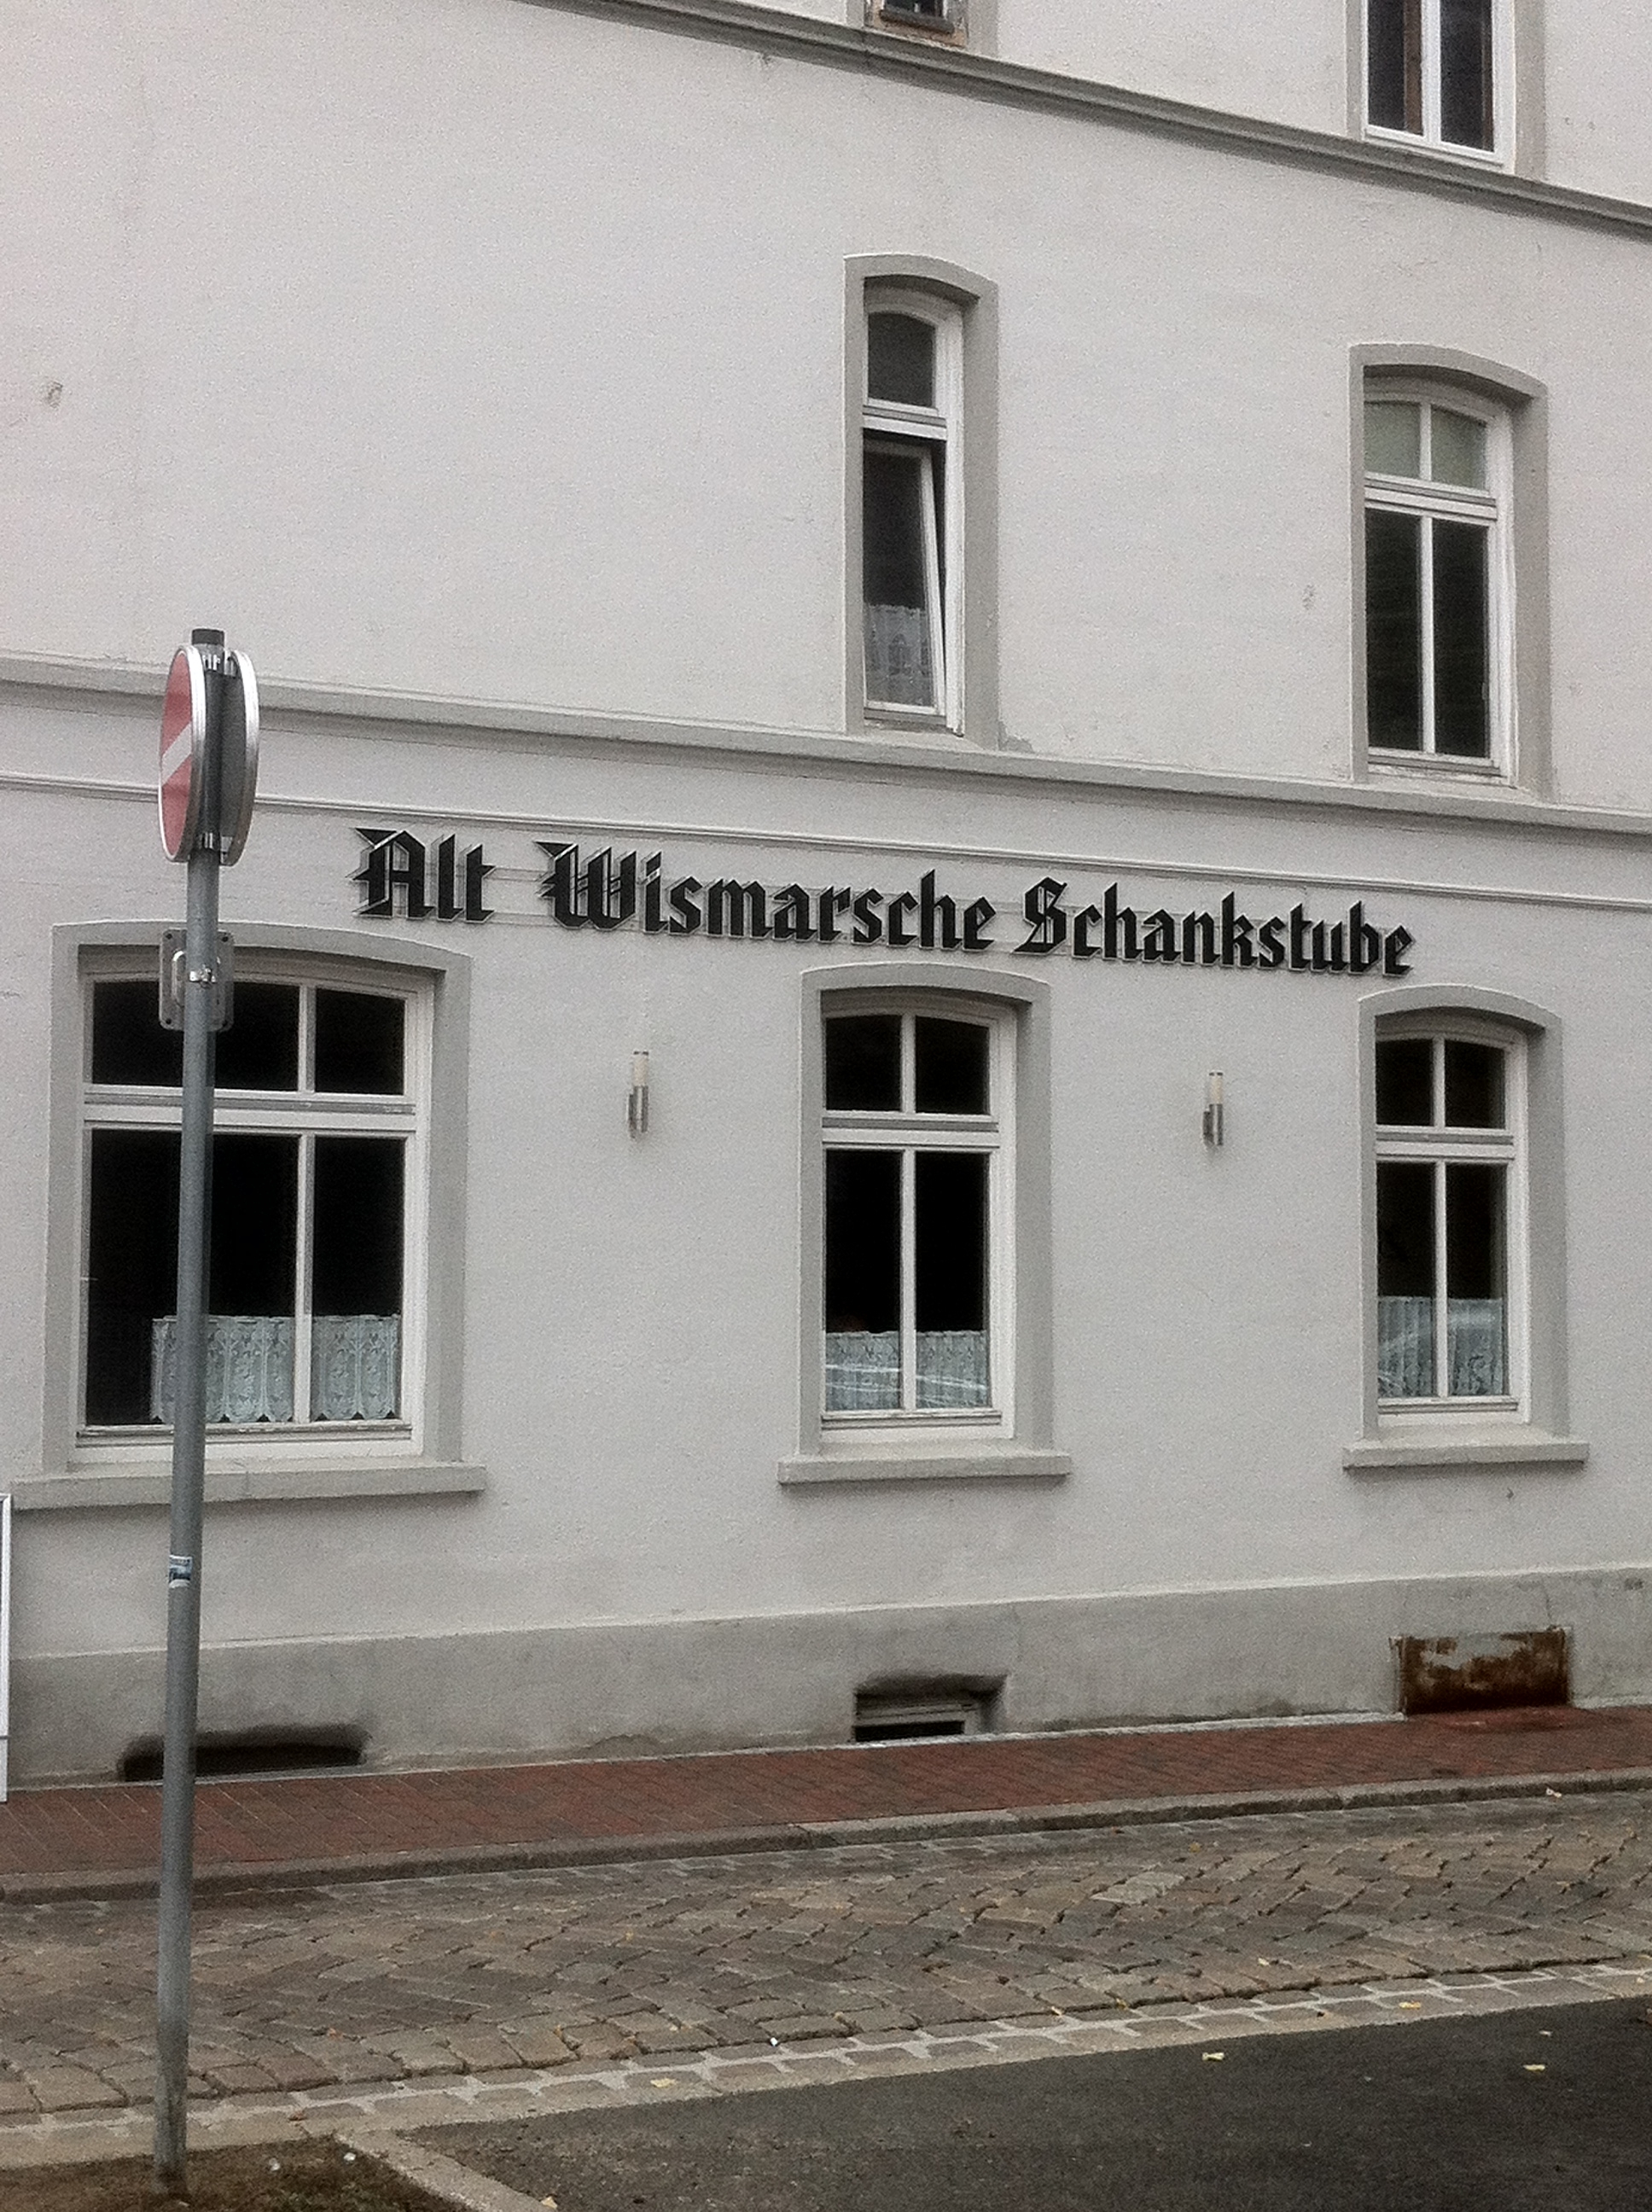 Bild 1 Altwismarsche Schankstube Inh. Reinhard Litschko Gasthaus in Wismar